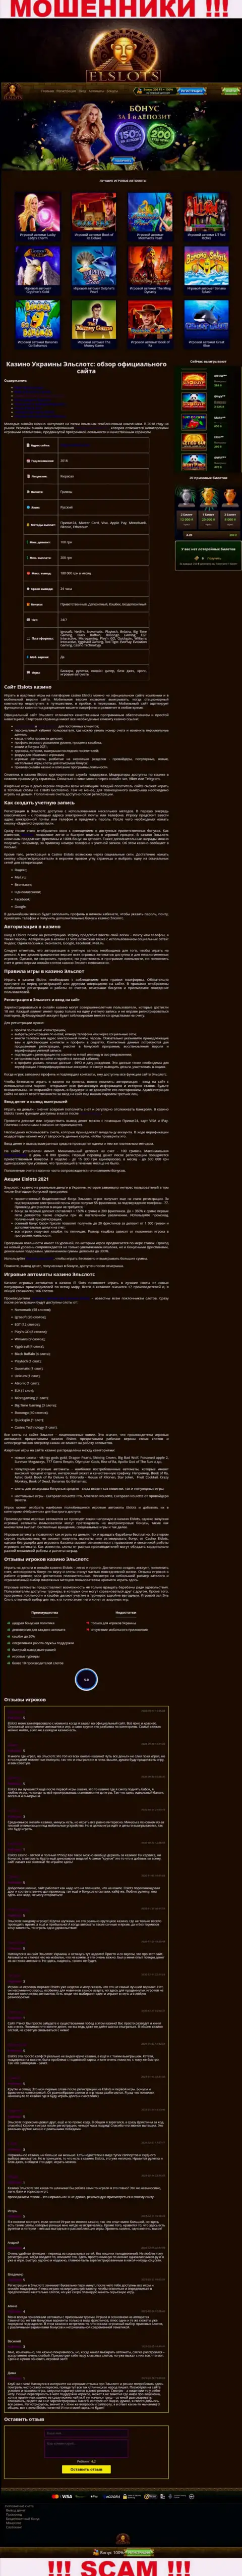 Внешний вид официальной internet странички жульнической конторы El Slots